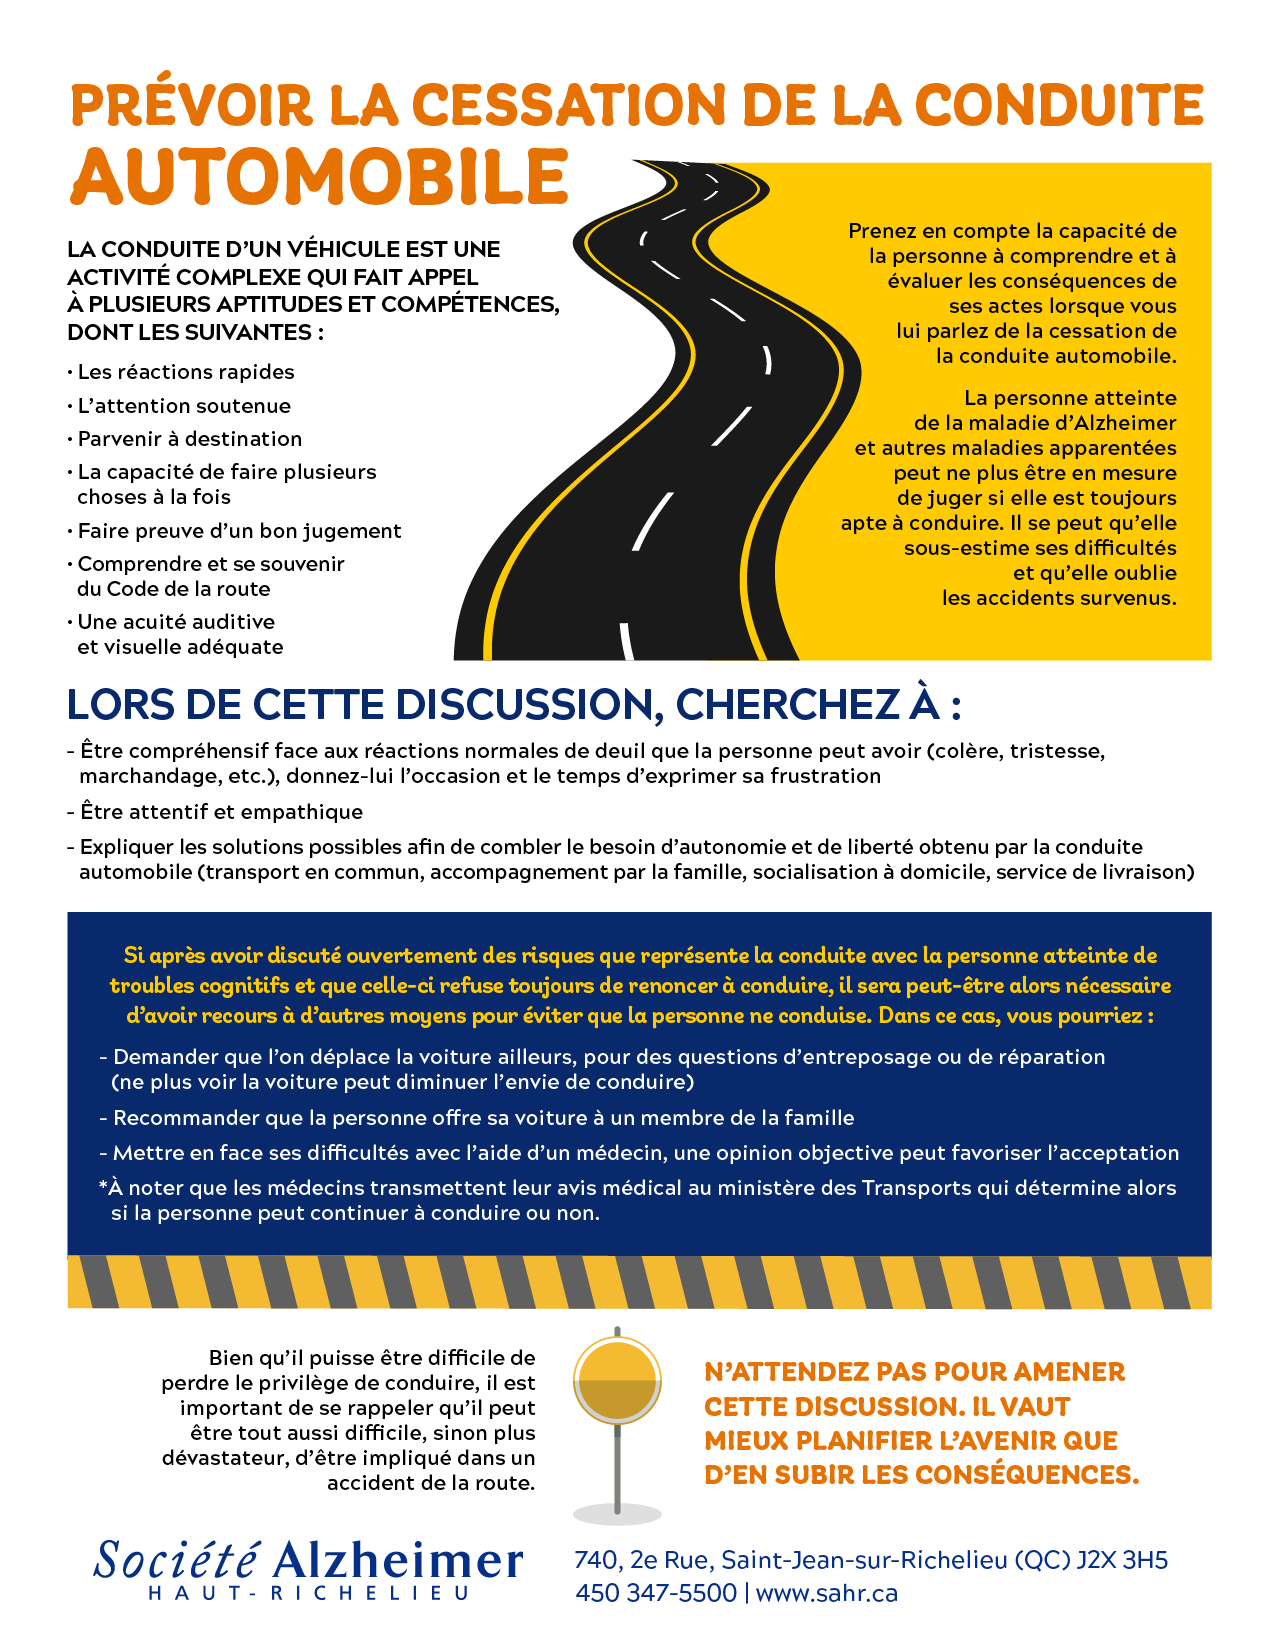 Aide-mémoire : prévoir la cessation de la conduite automobile